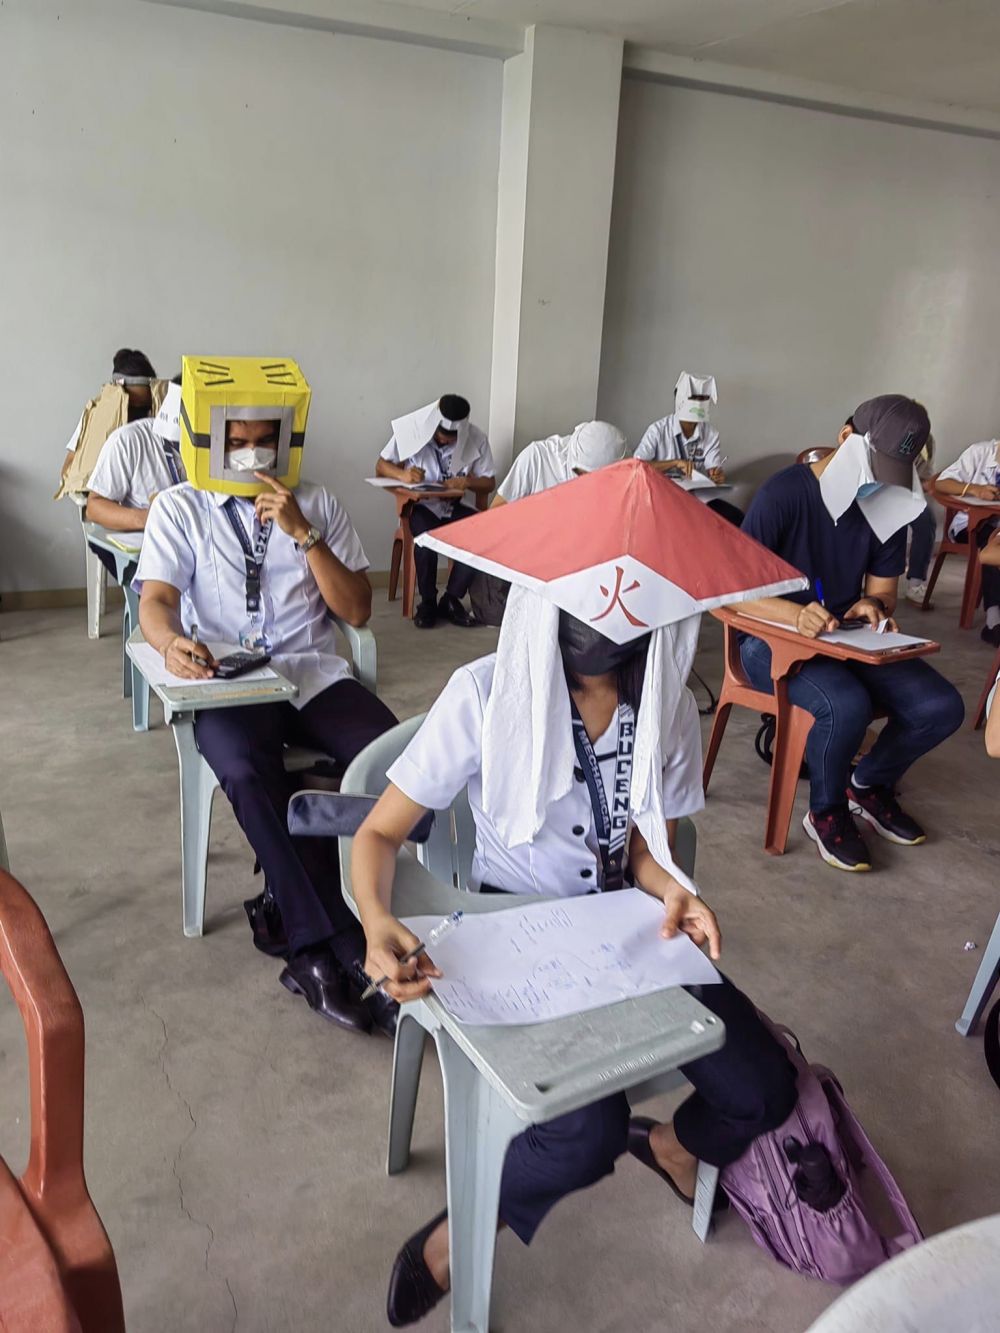 Mahasiswa pakai topi 'antinyontek' saat ujian, bentuknya nyeleneh